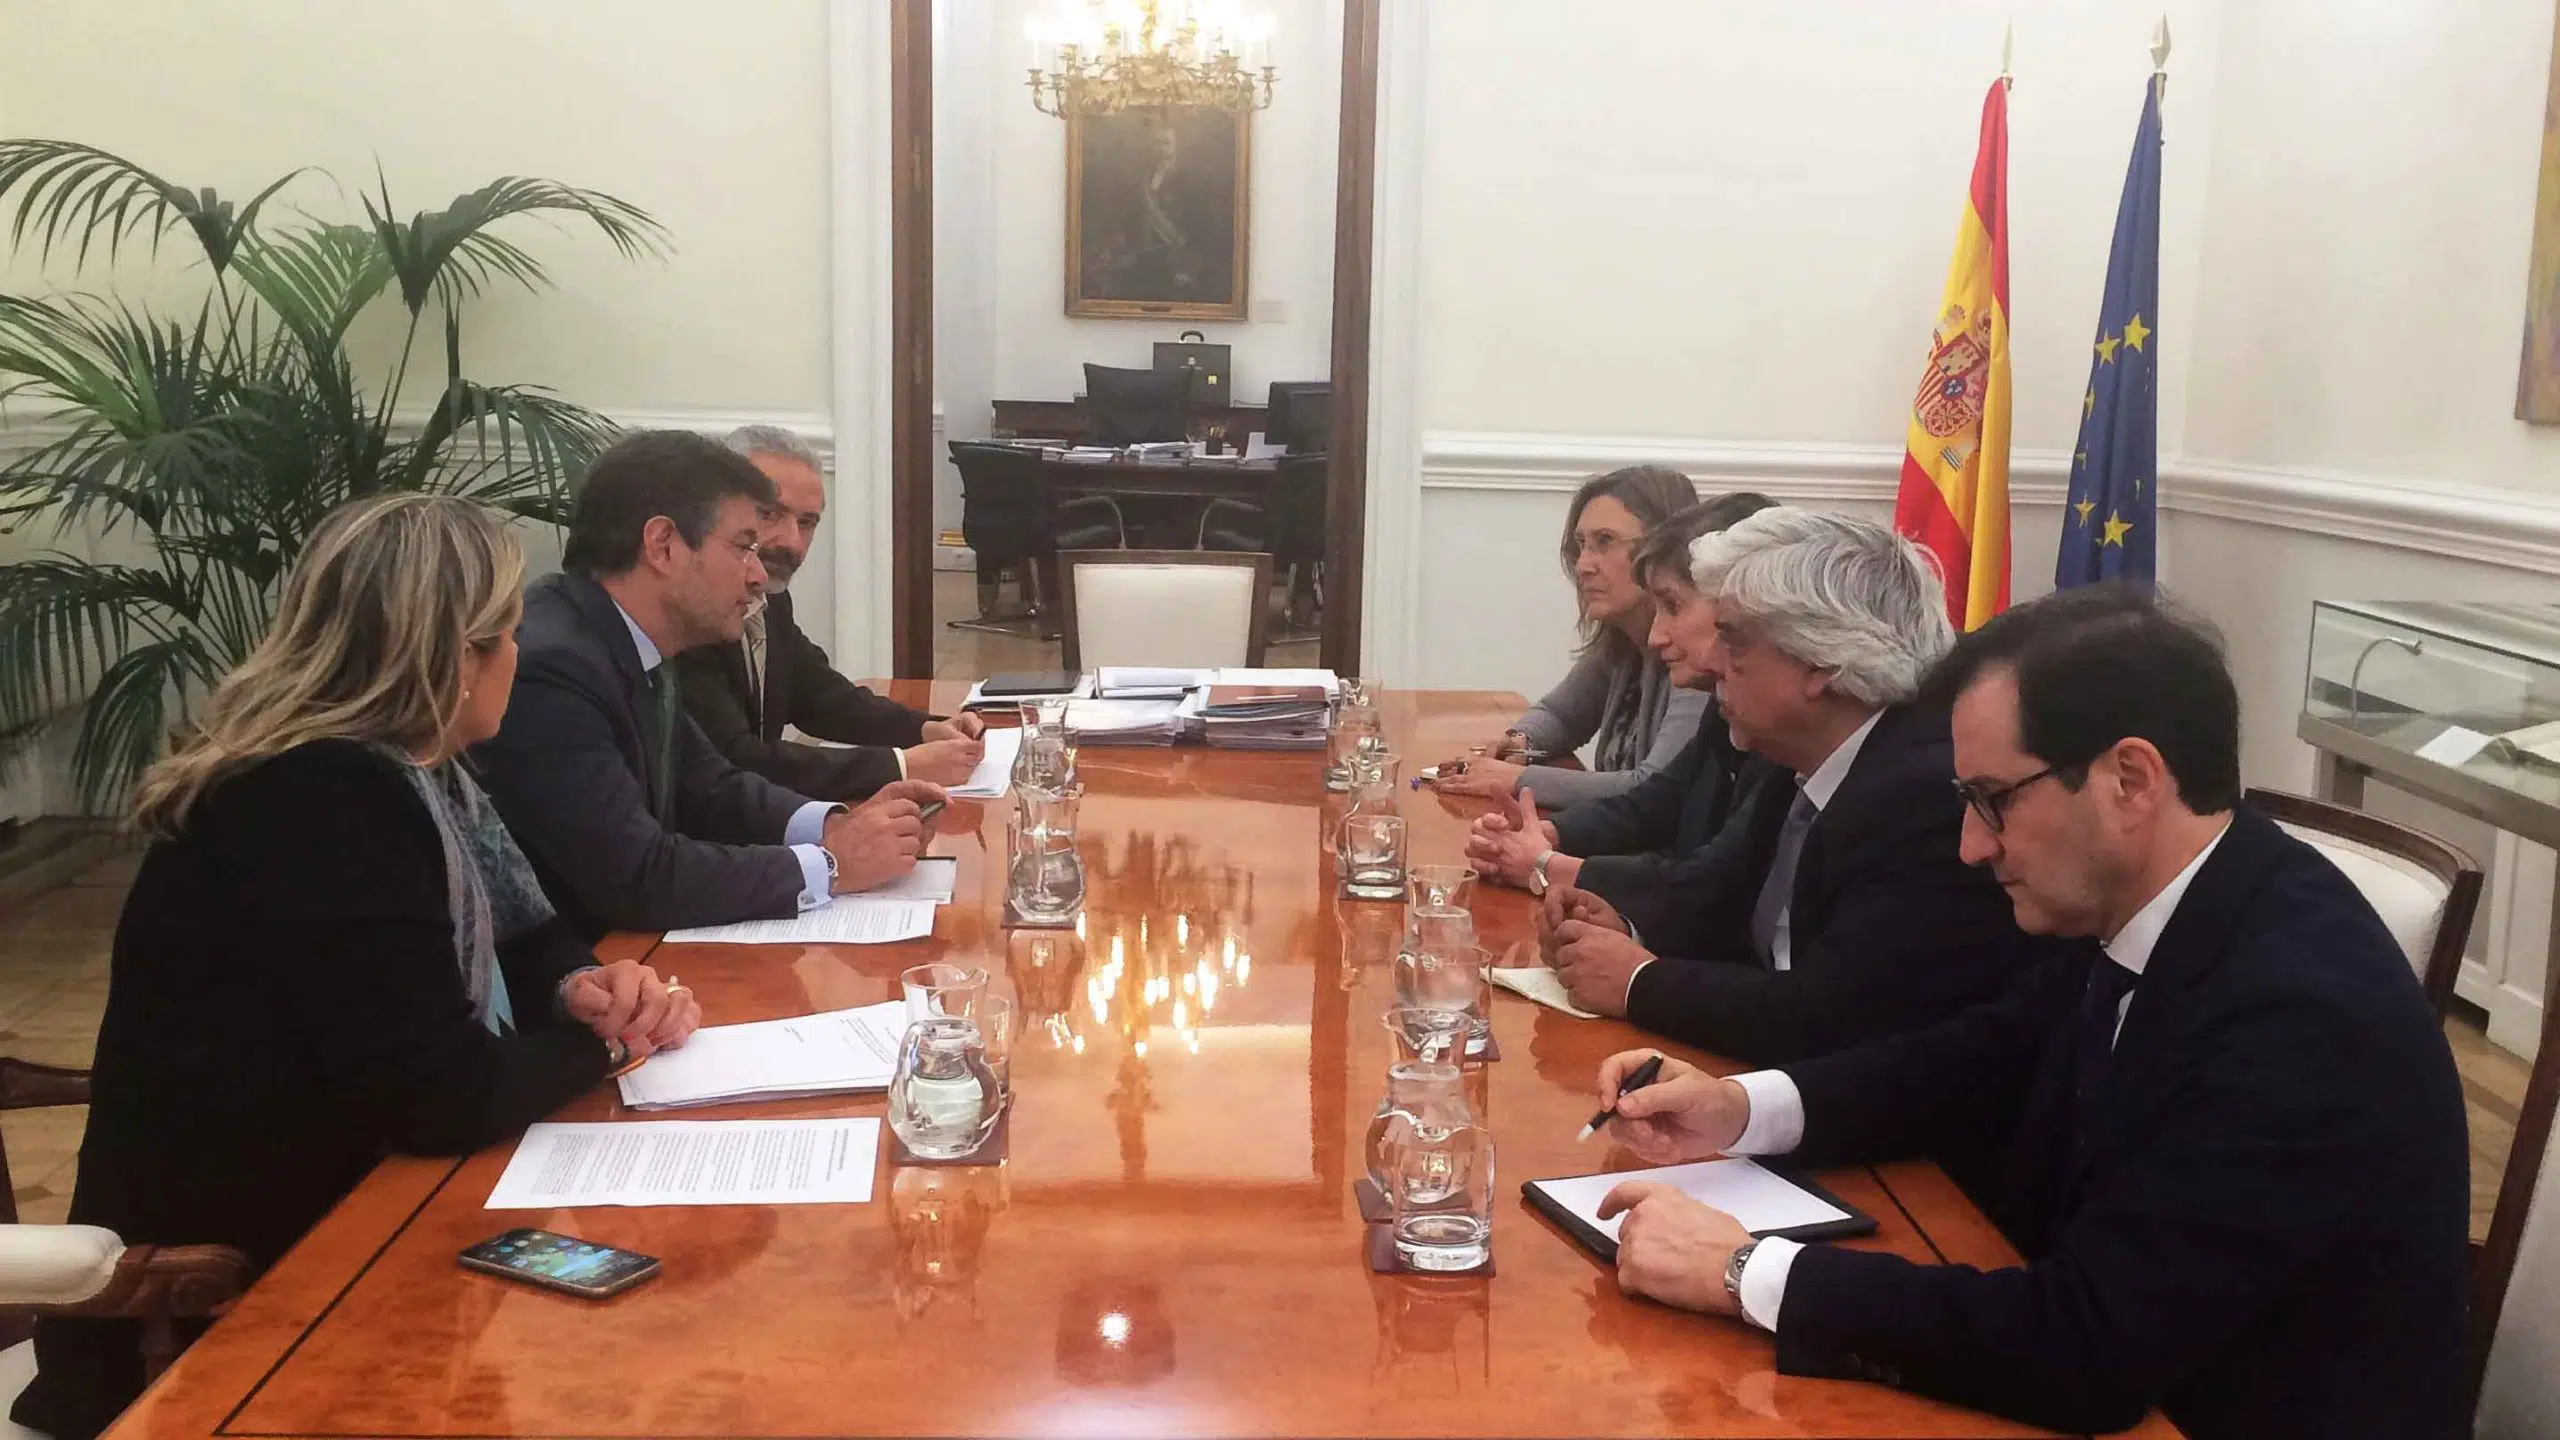 Los abogados del turno de oficio no pagarán IVA, ha anunciado oficialmente Catalá